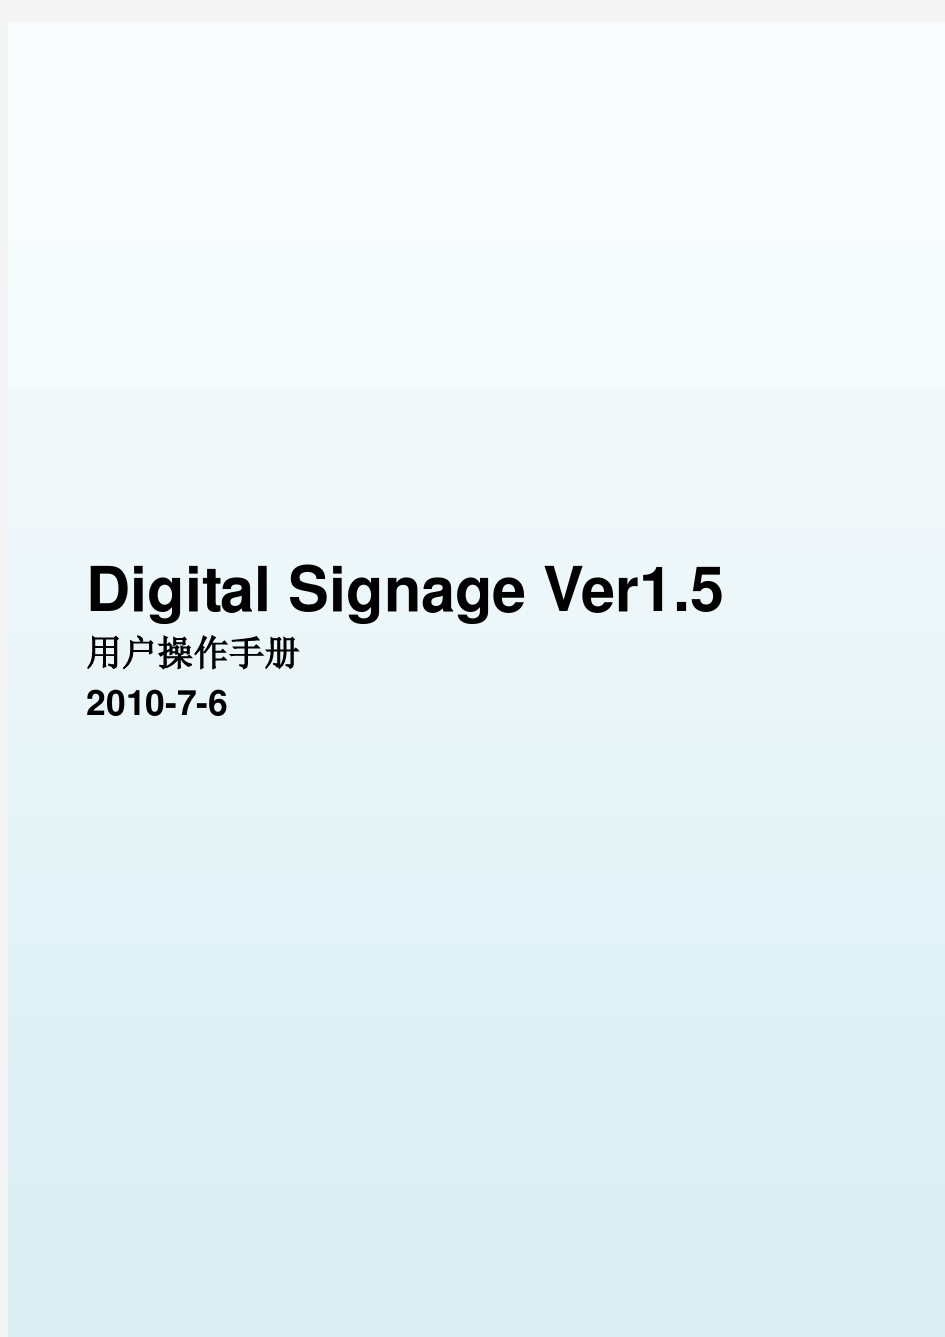 Digital Signage Ver1.5用户操作手册